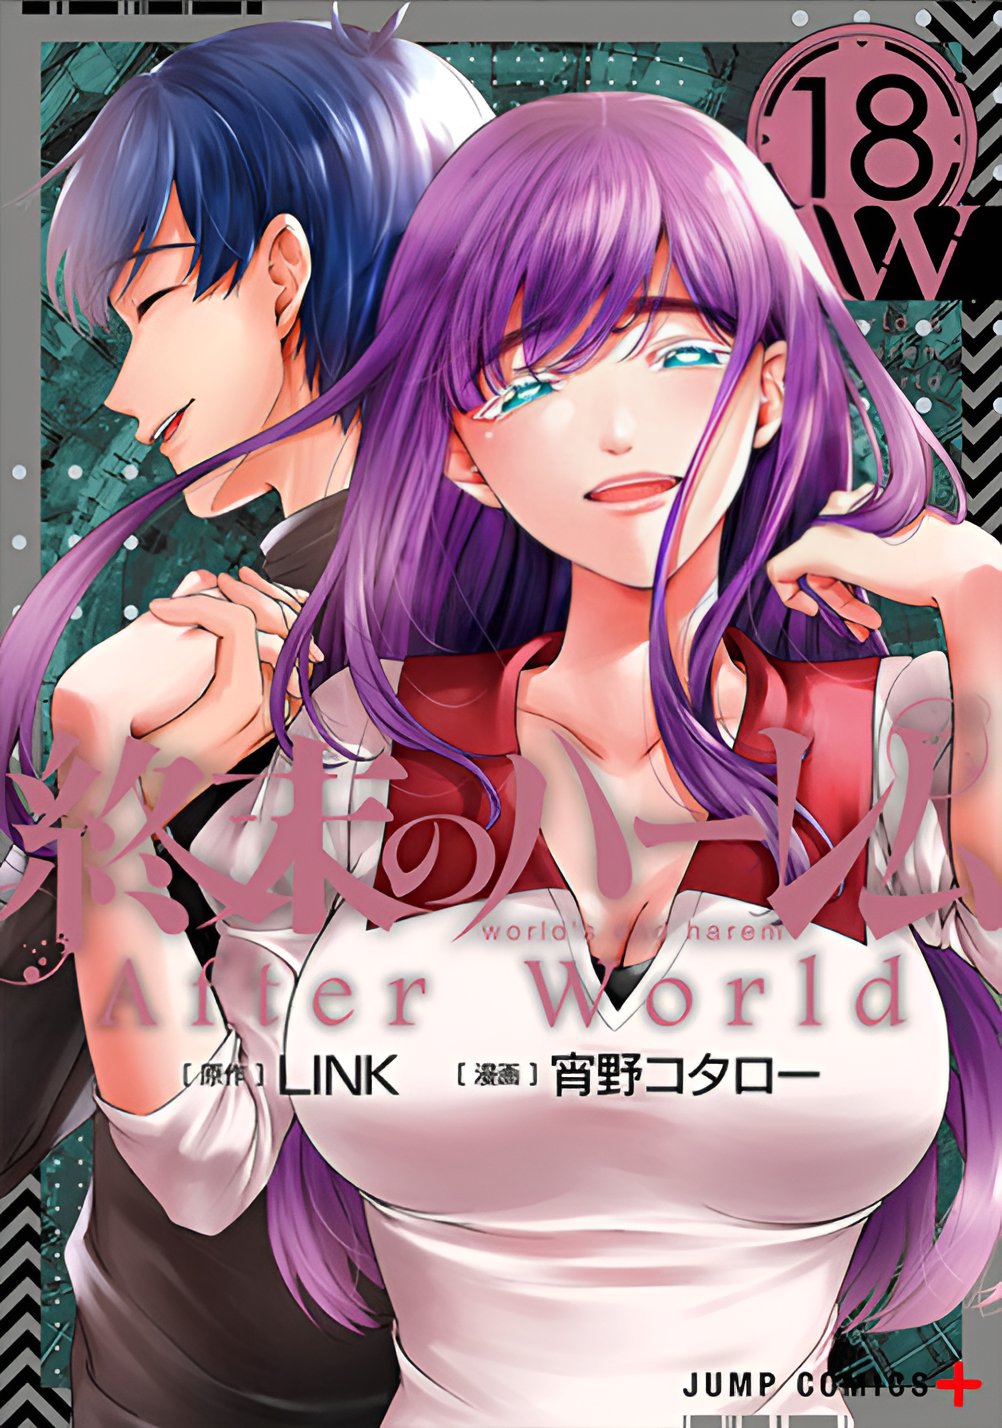 World's End Harem Vol. 13 - After World : Link: : Books